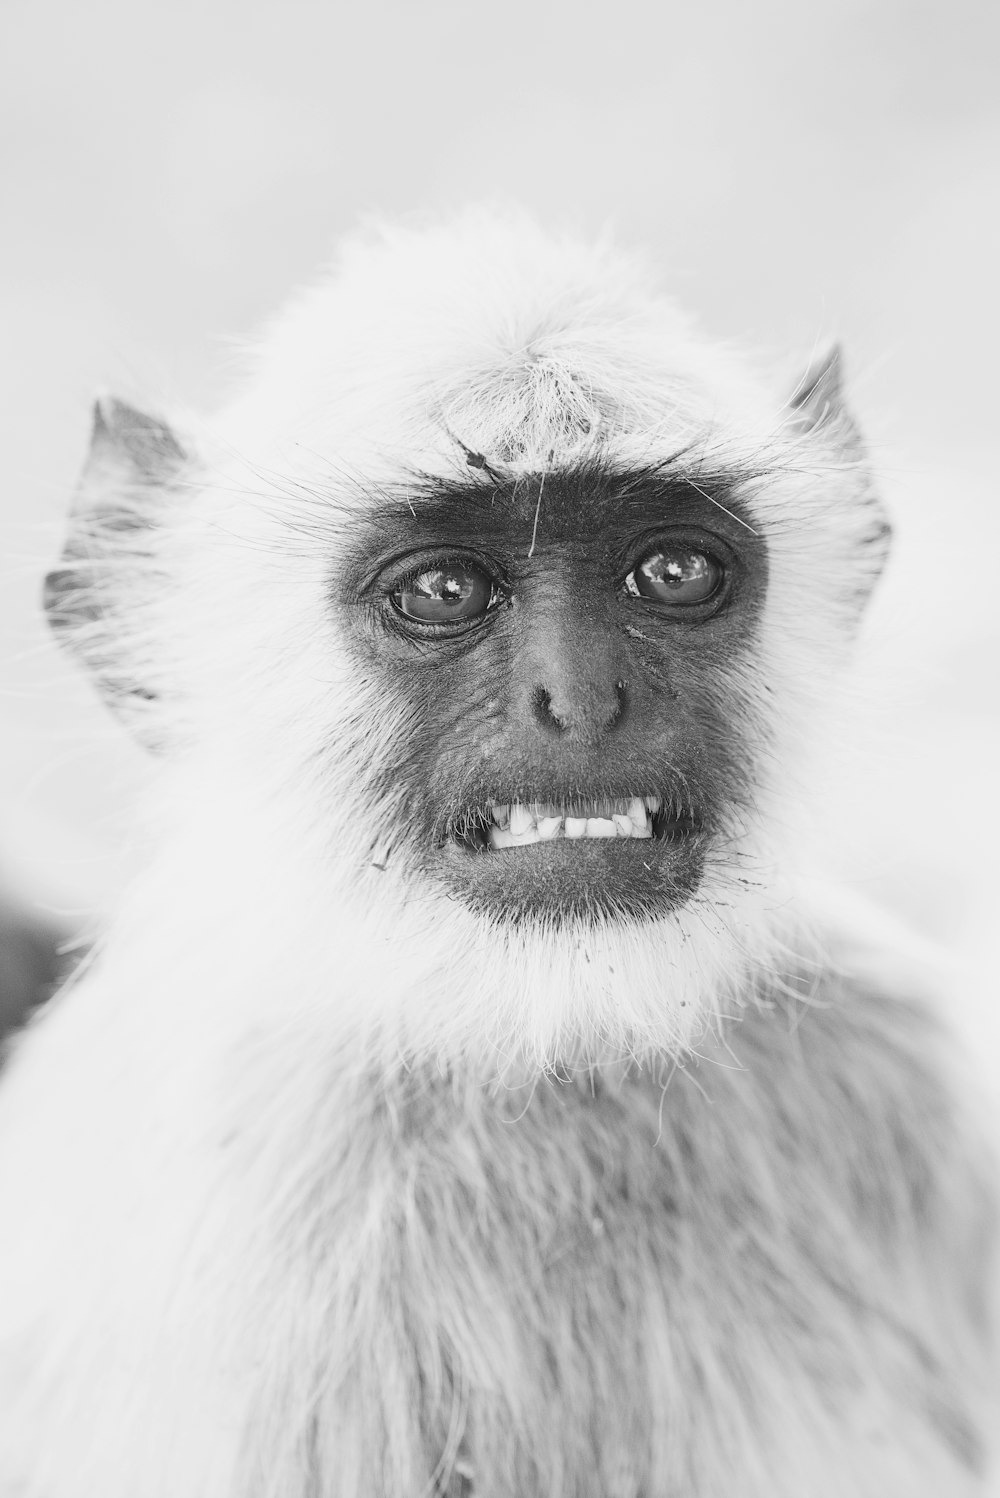 Graustufenfoto eines Primaten